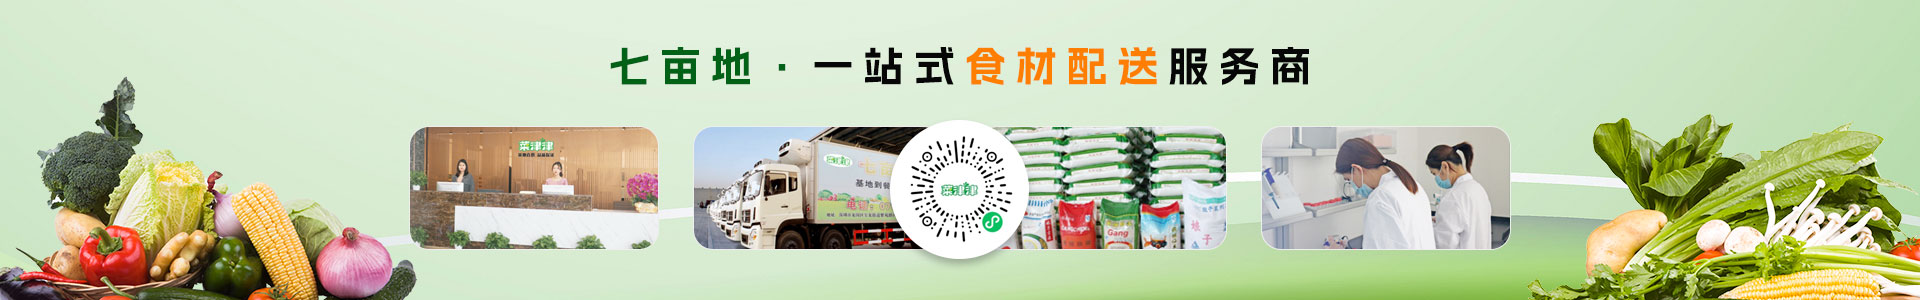 深圳市七亩地农产品实业有限公司-新鲜牛肉配送